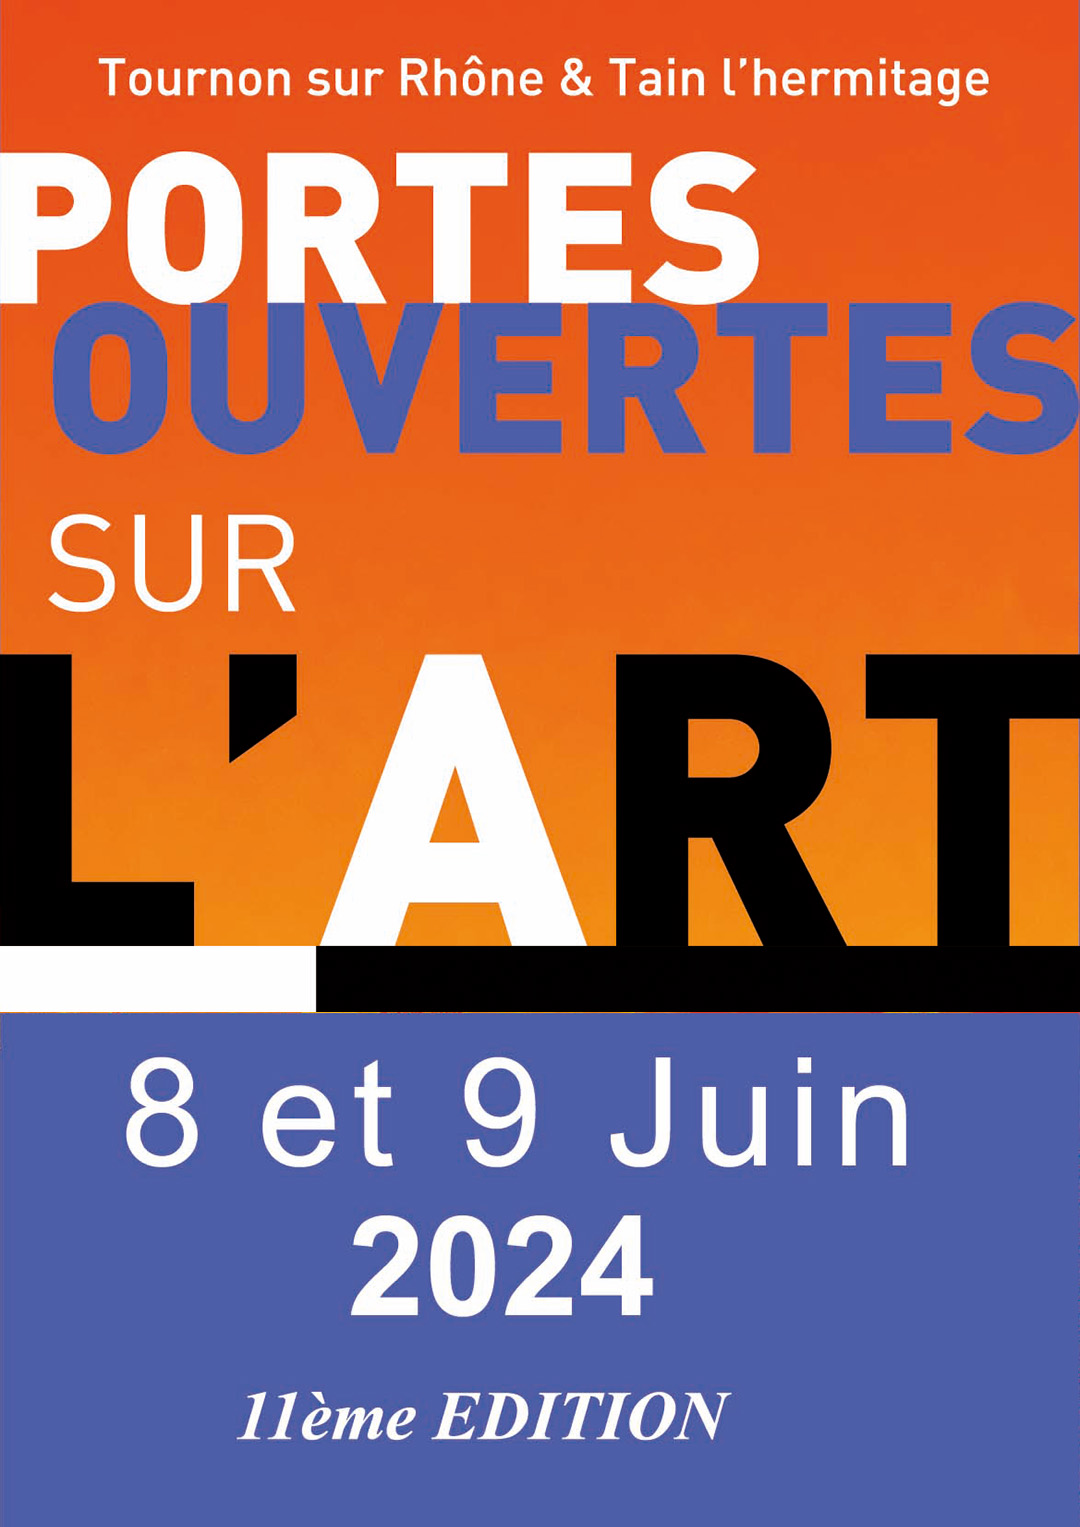 PORTES OUVERTES SUR L'ART. 8 et 9 juin 2024